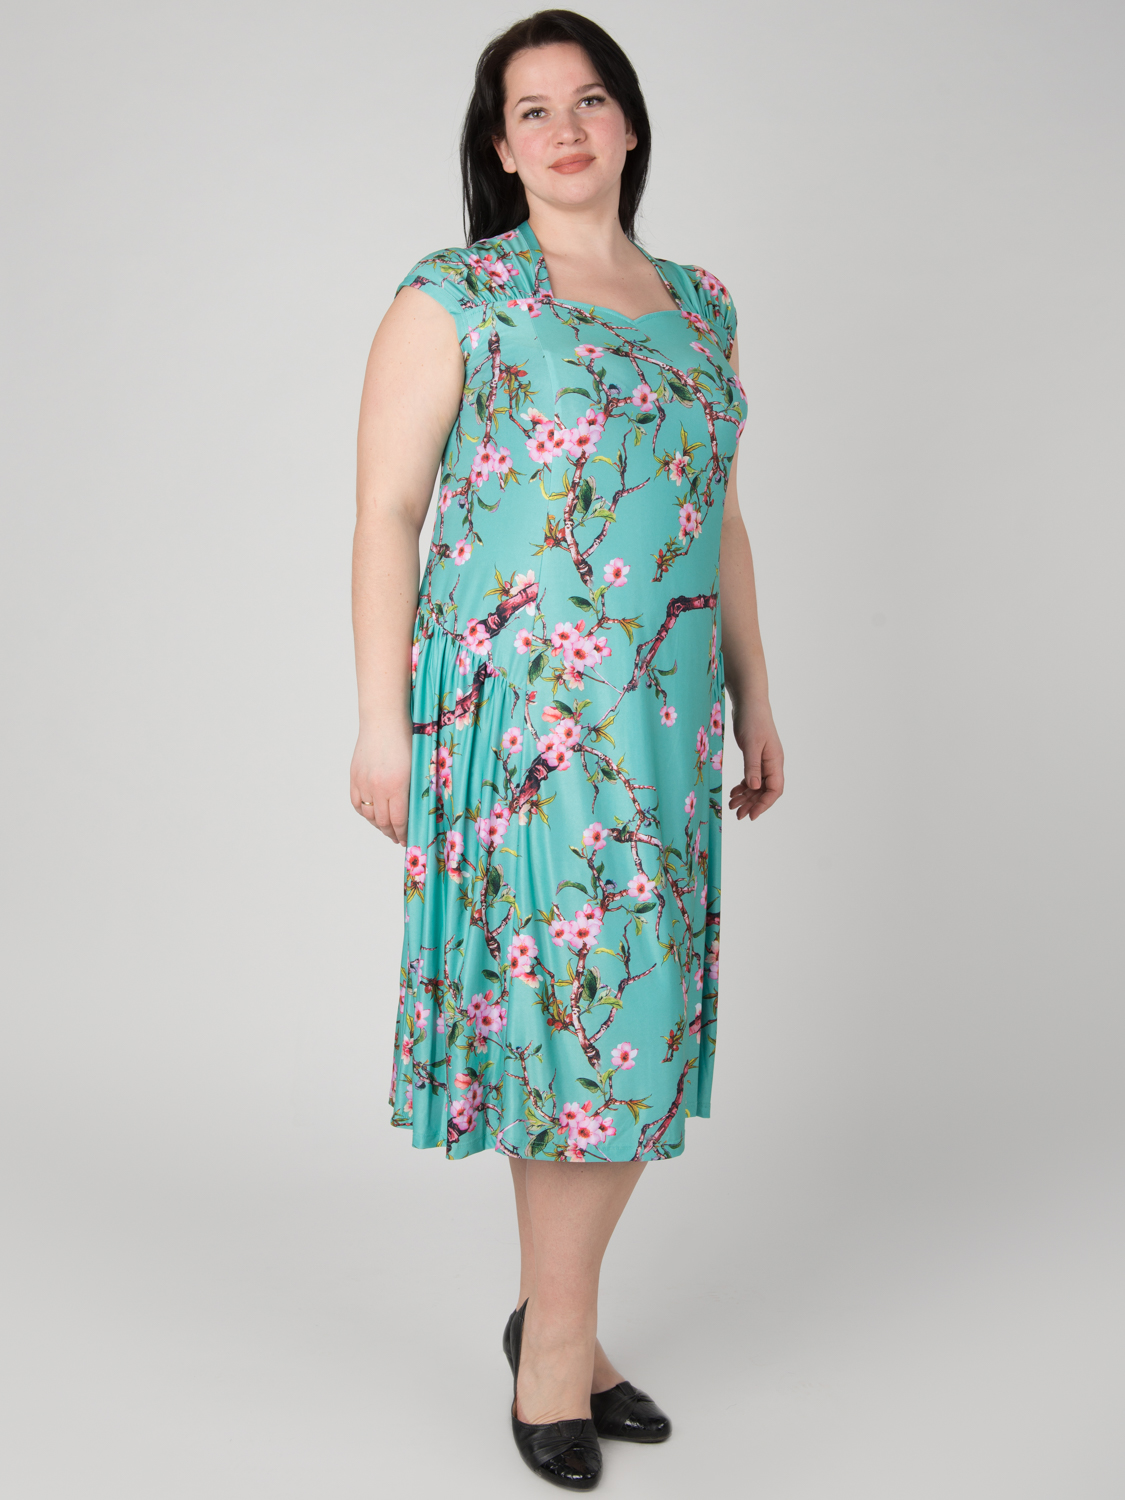 Платье бирюзовое с цветами большого размера